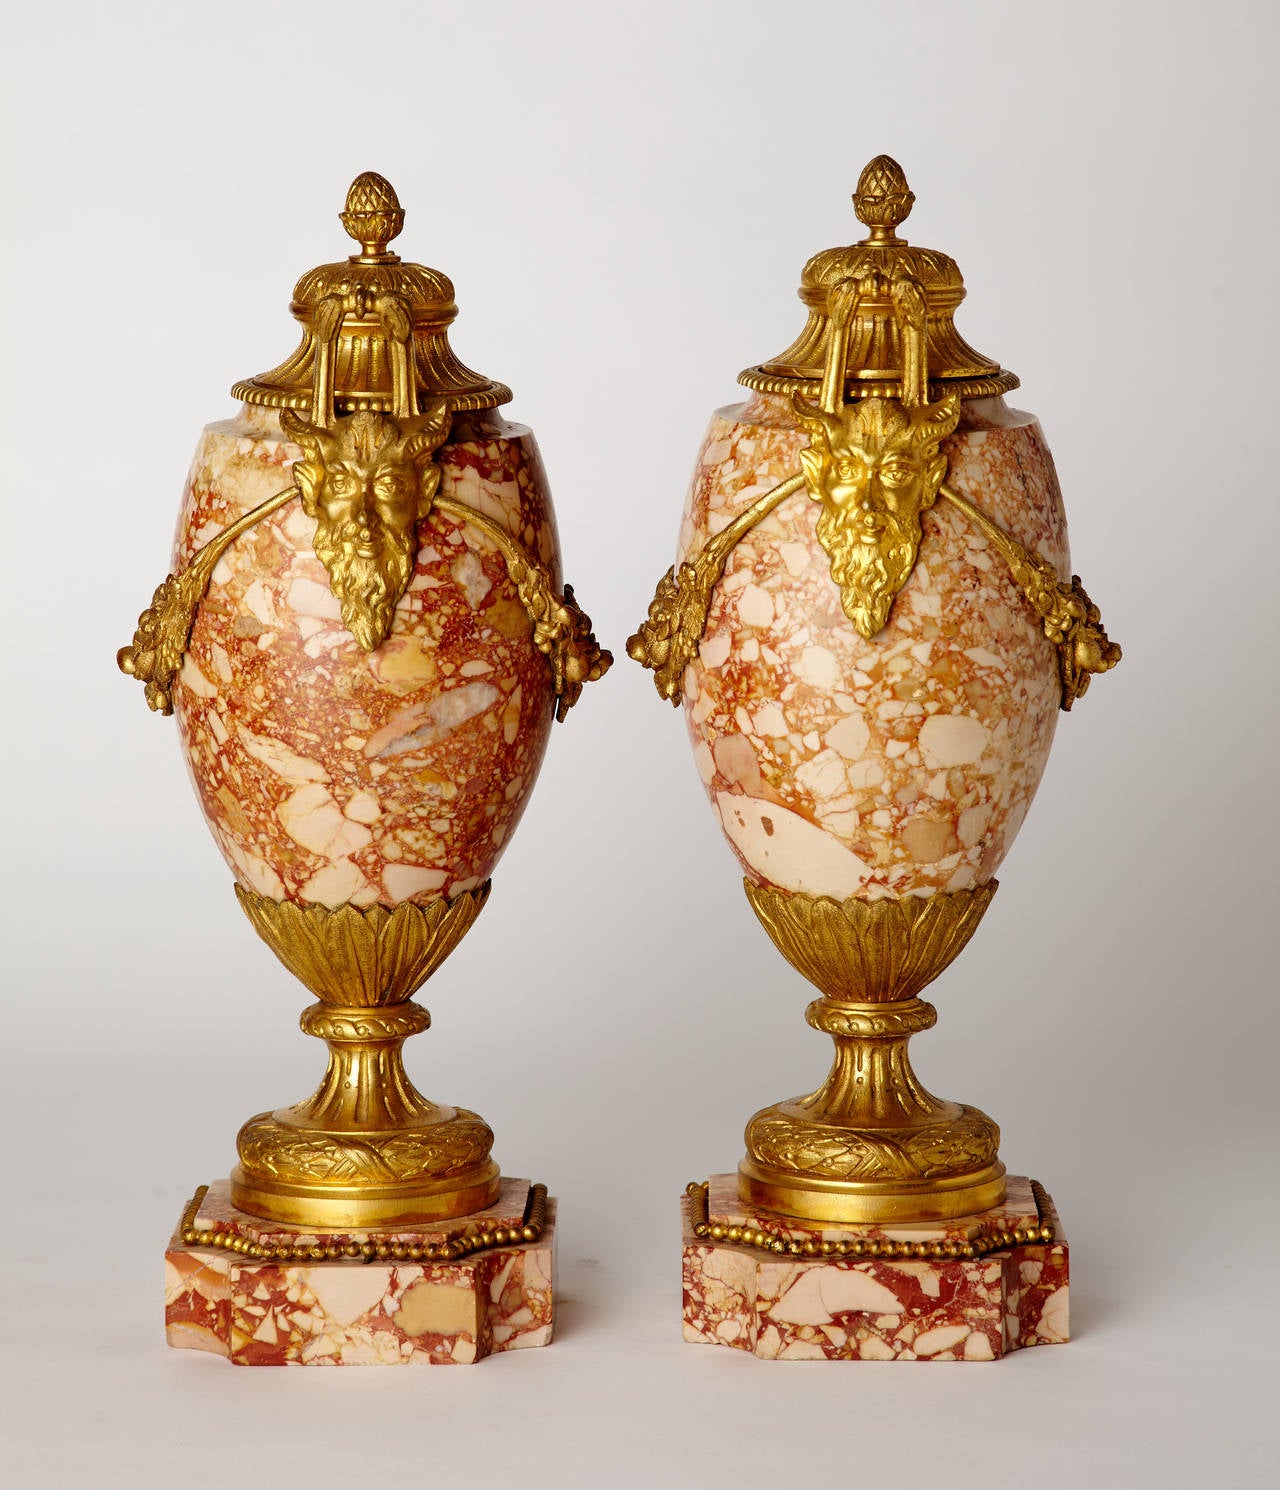 Paire de vases en marbre de style Louis XVI français vers 1900 avec des montures en bronze doré finement travaillées. Les guirlandes en bronze doré se terminent par des poignées ancrées par des masques de satyre. Couvercles amovibles en bronze doré.